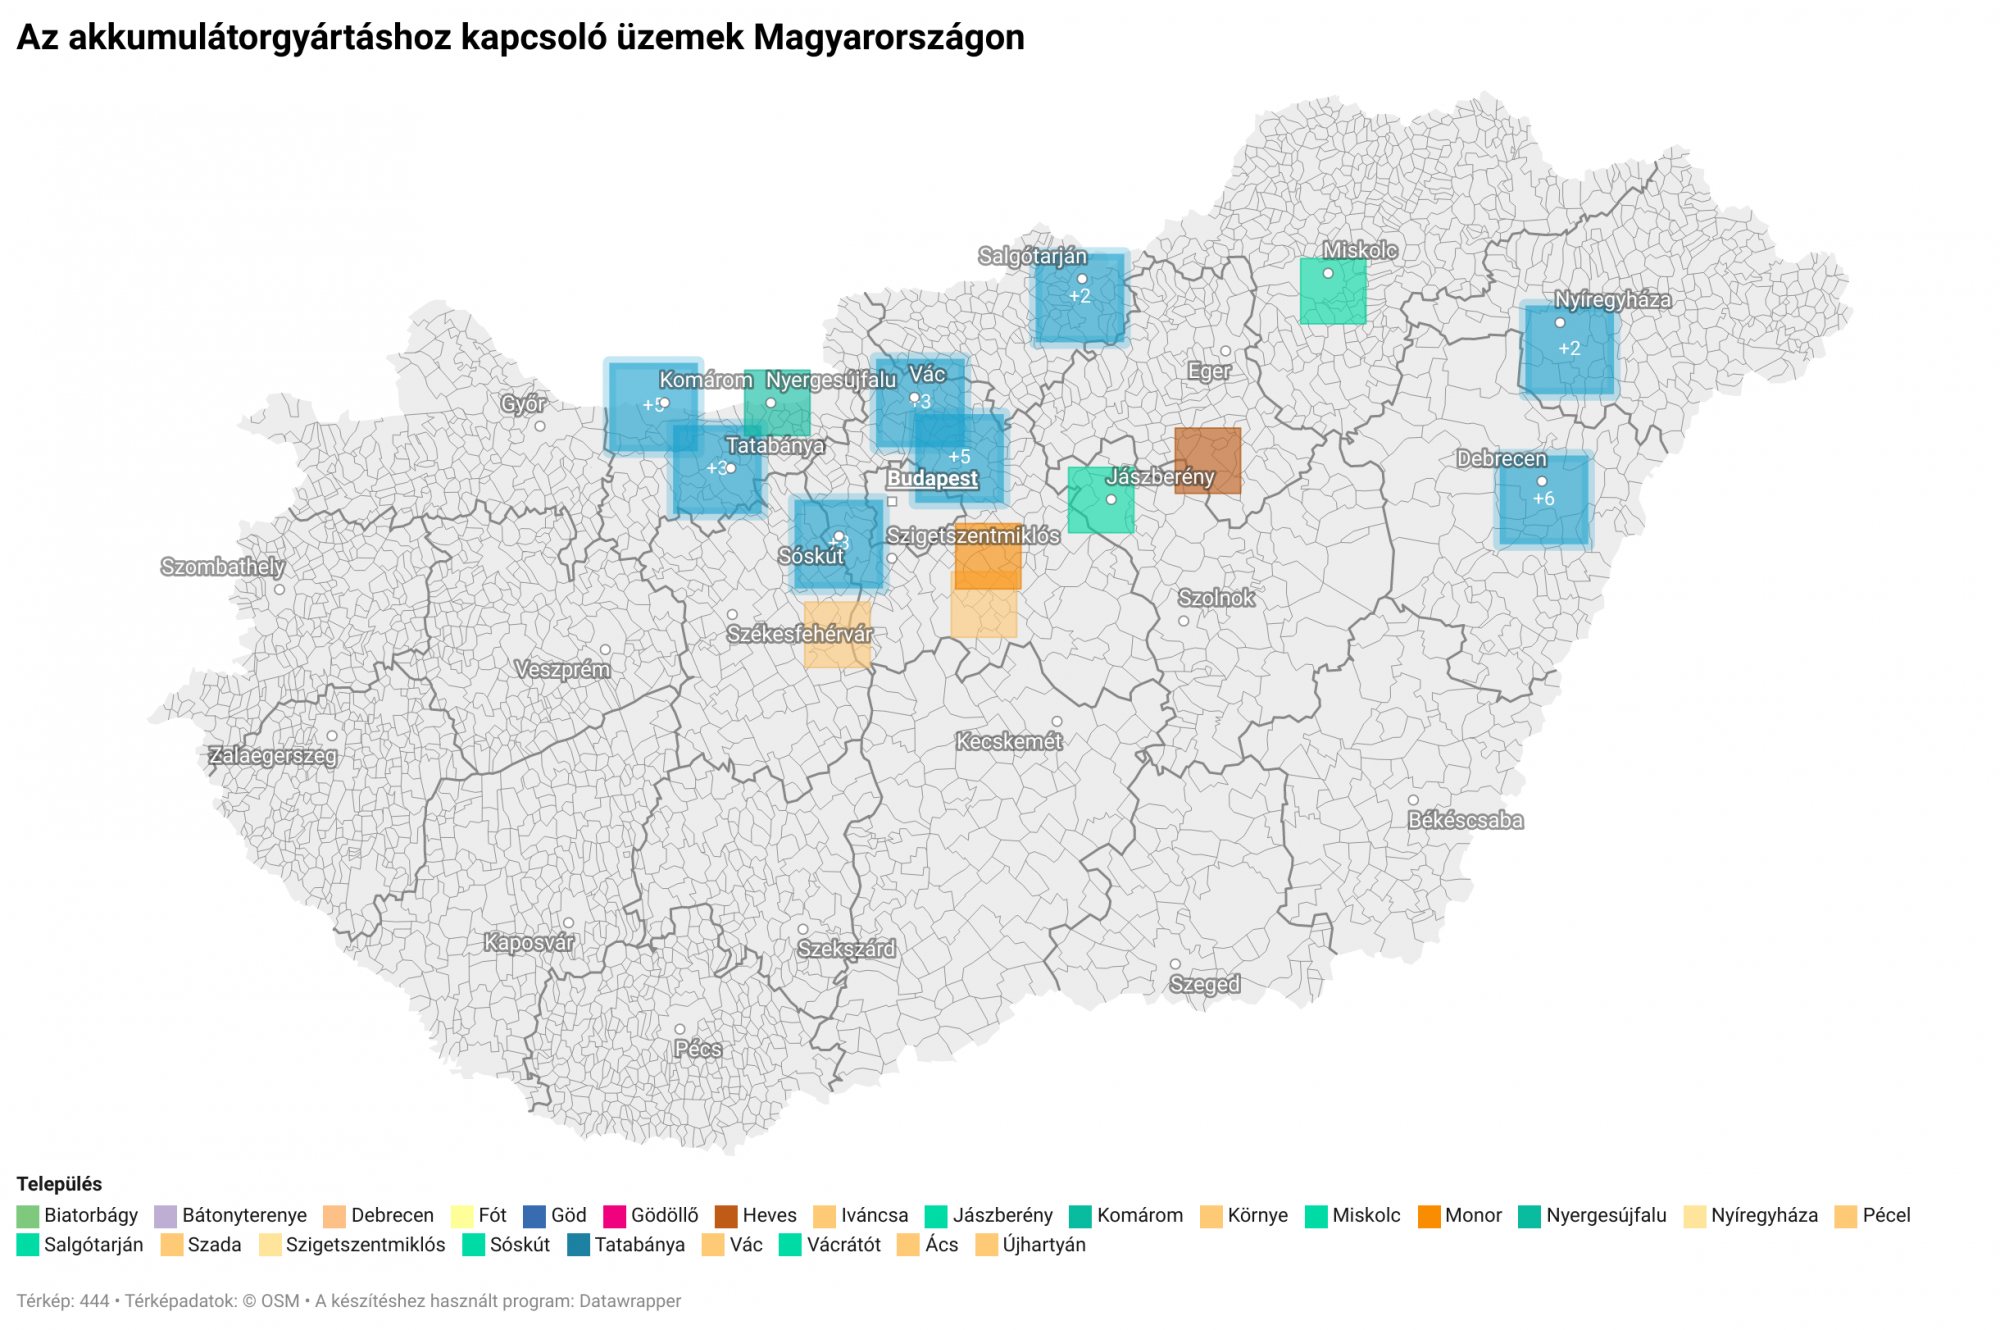 Térképre raktuk a Magyarországot átszövő akkuláncot